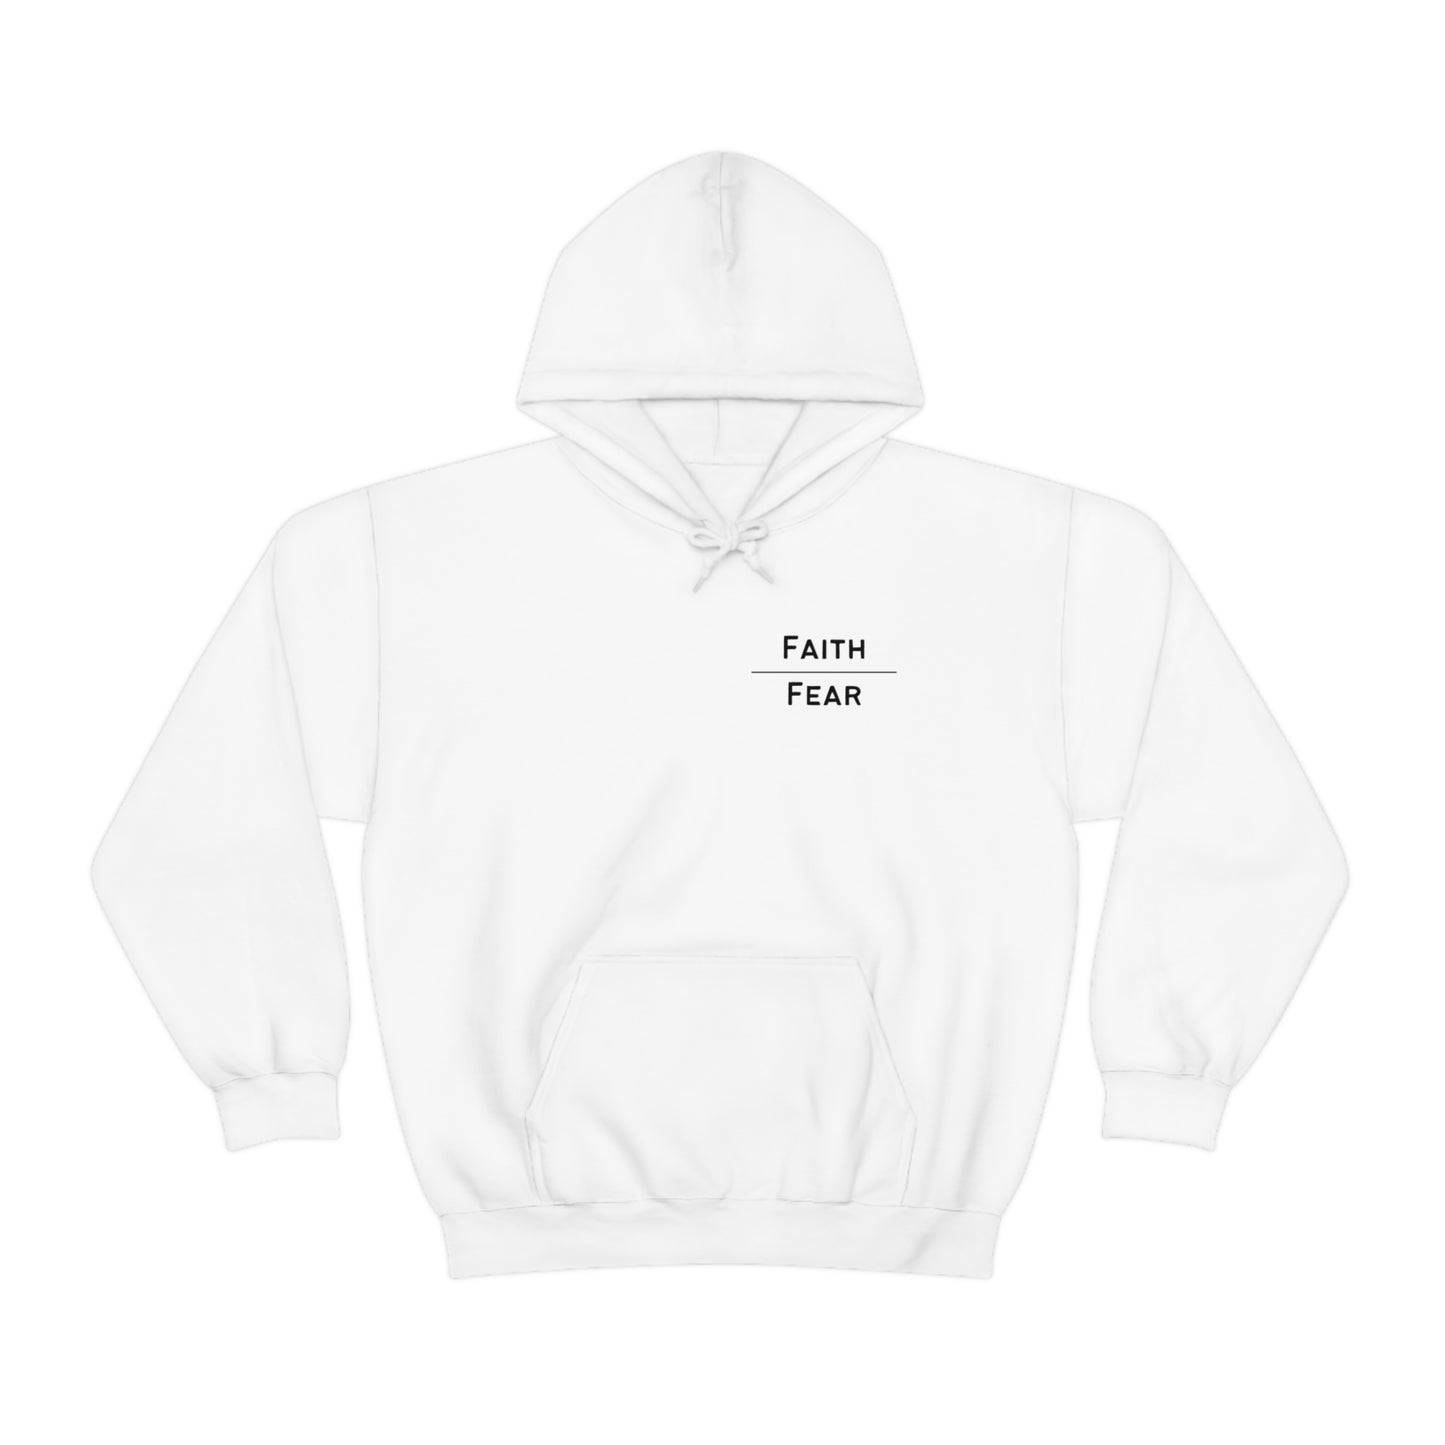 Faith over Fear Hooded Sweatshirt